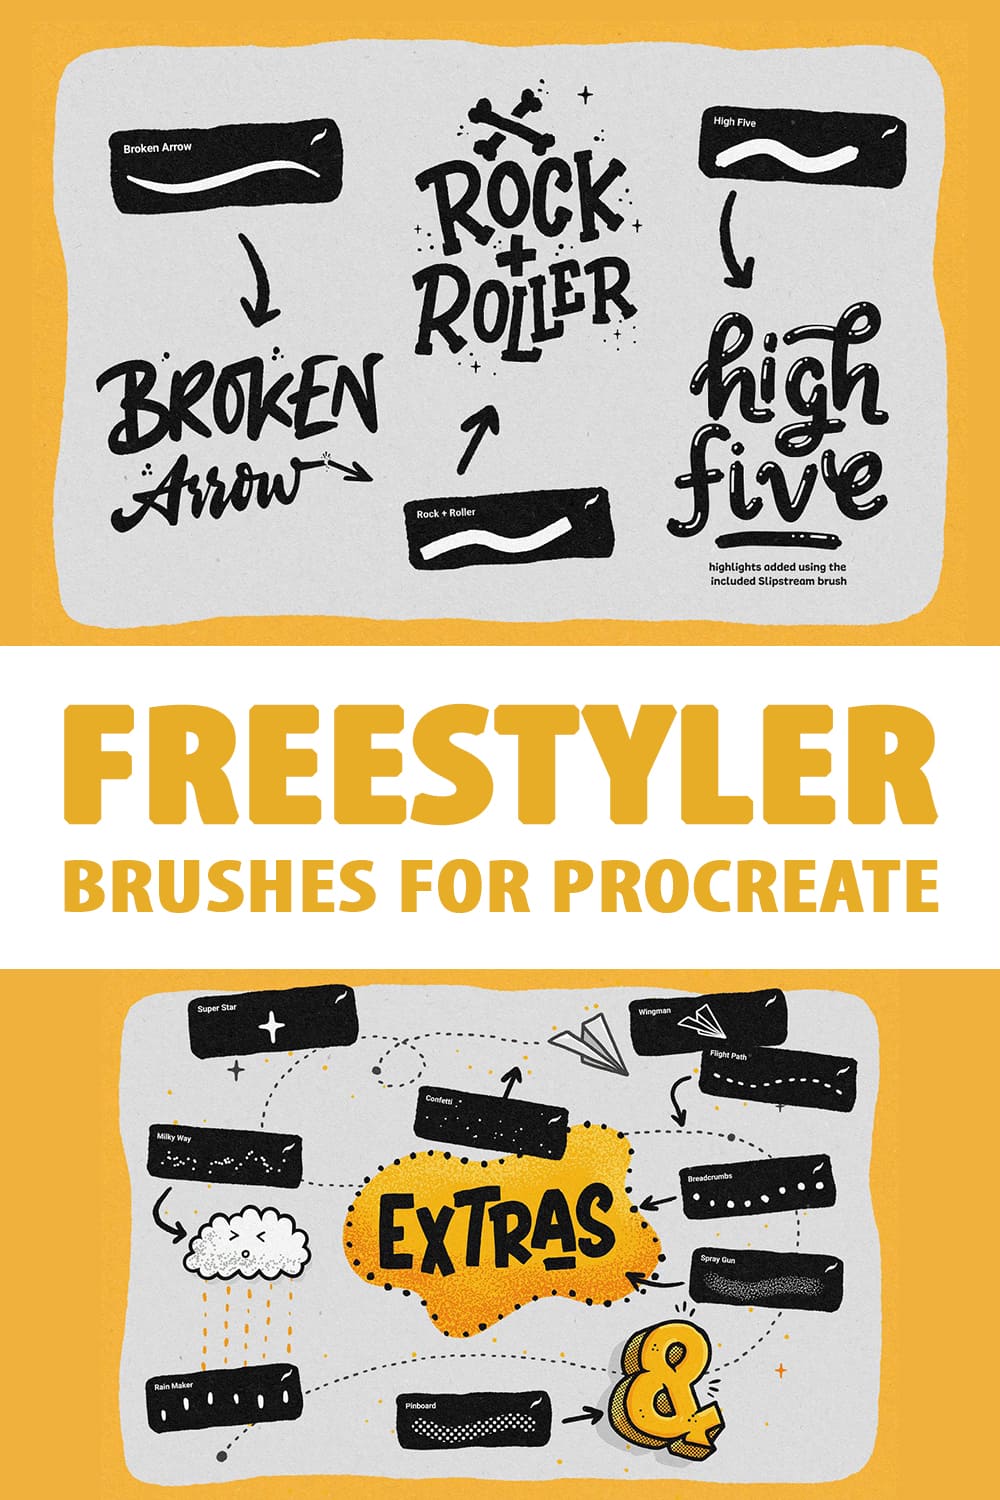 Freestyler - Brushes for Procreate Pinterest.